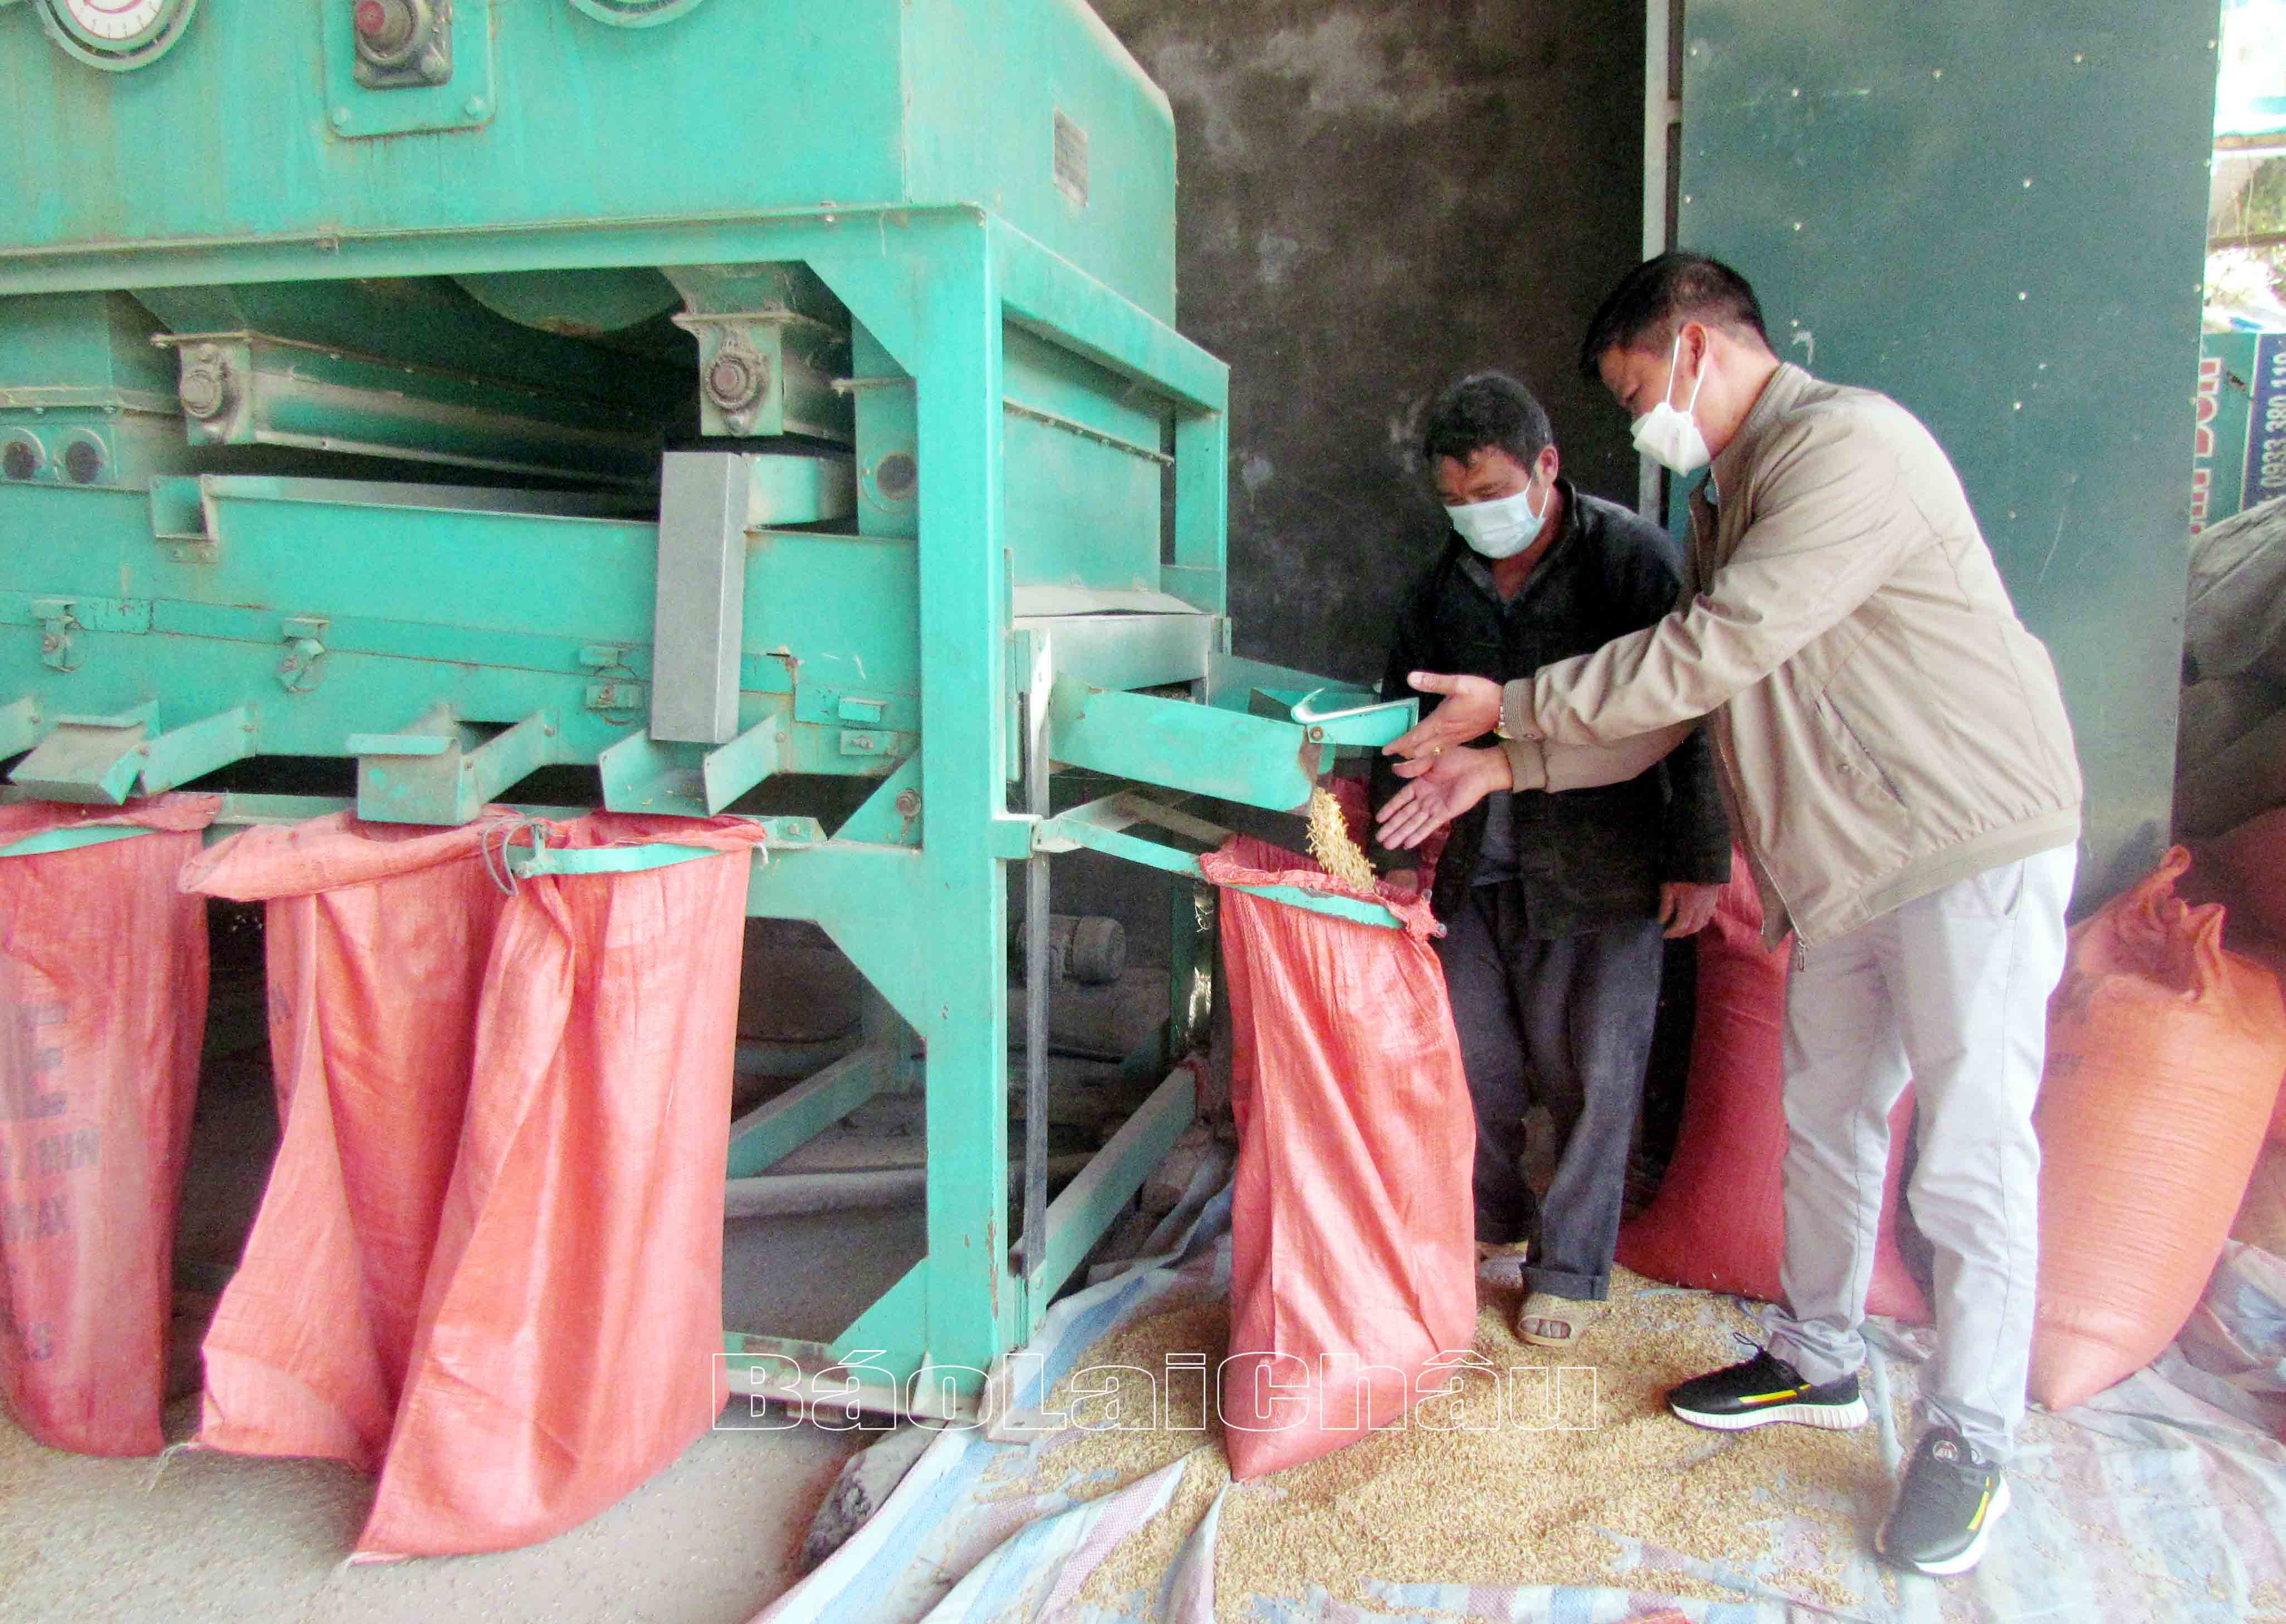 Công ty TNHH một thành viên giống vật tư nông nghiệp Tây Bắc đầu tư máy móc để sản xuất ra những sản phẩm gạo tẻ râu có chất lượng tốt nhất.